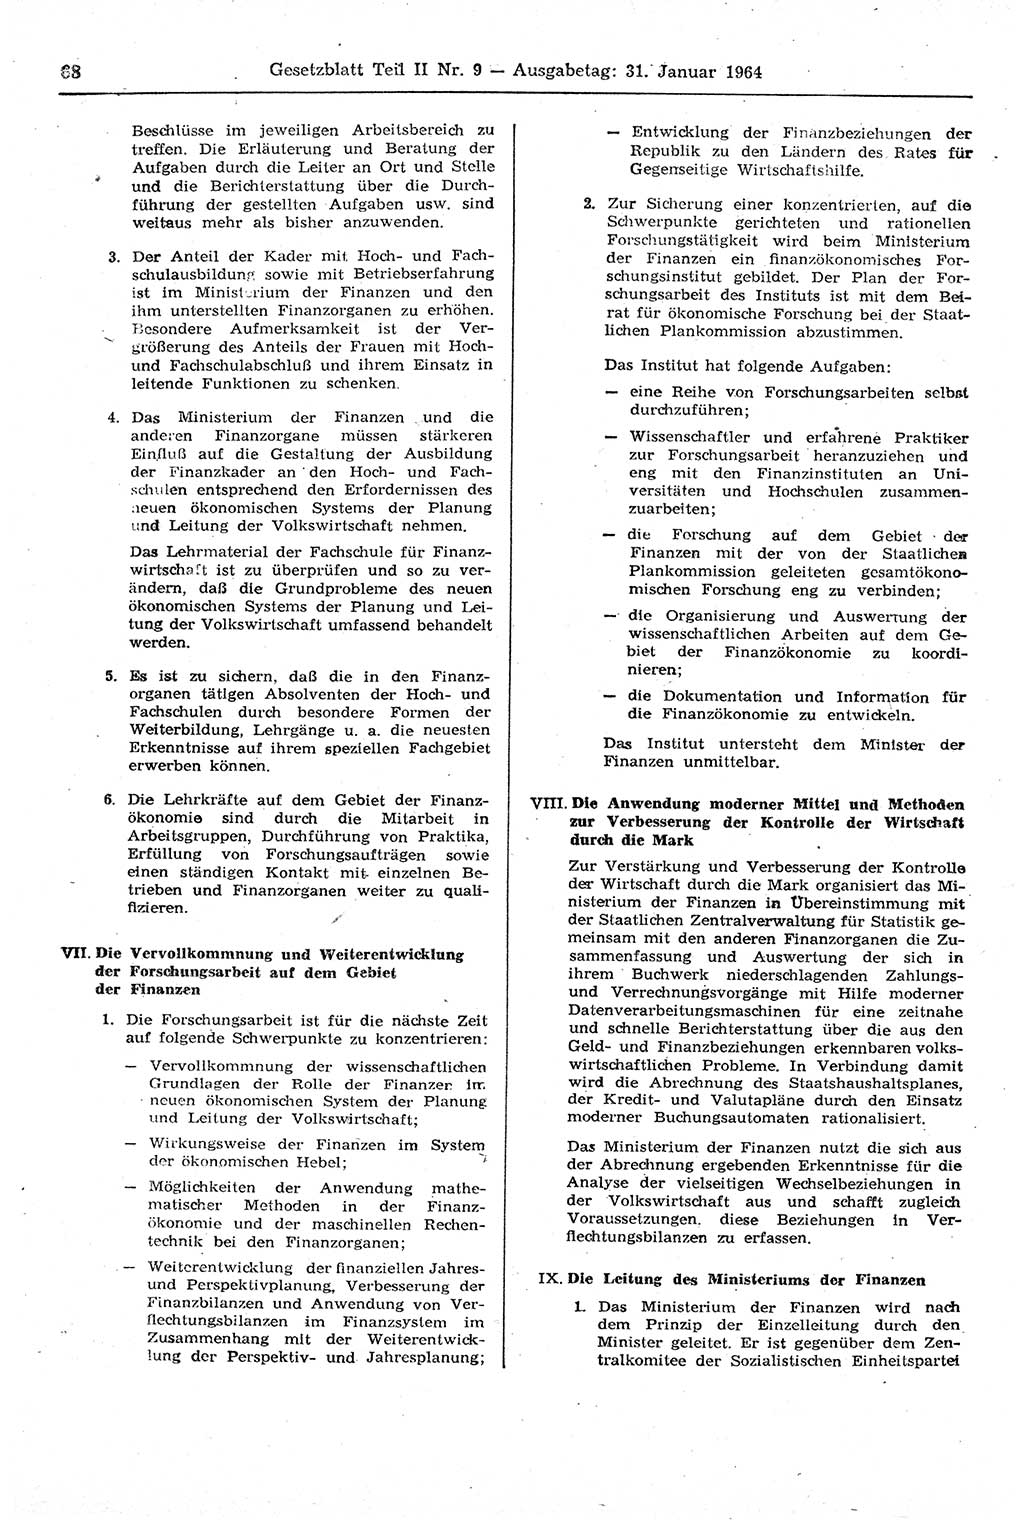 Gesetzblatt (GBl.) der Deutschen Demokratischen Republik (DDR) Teil ⅠⅠ 1964, Seite 68 (GBl. DDR ⅠⅠ 1964, S. 68)